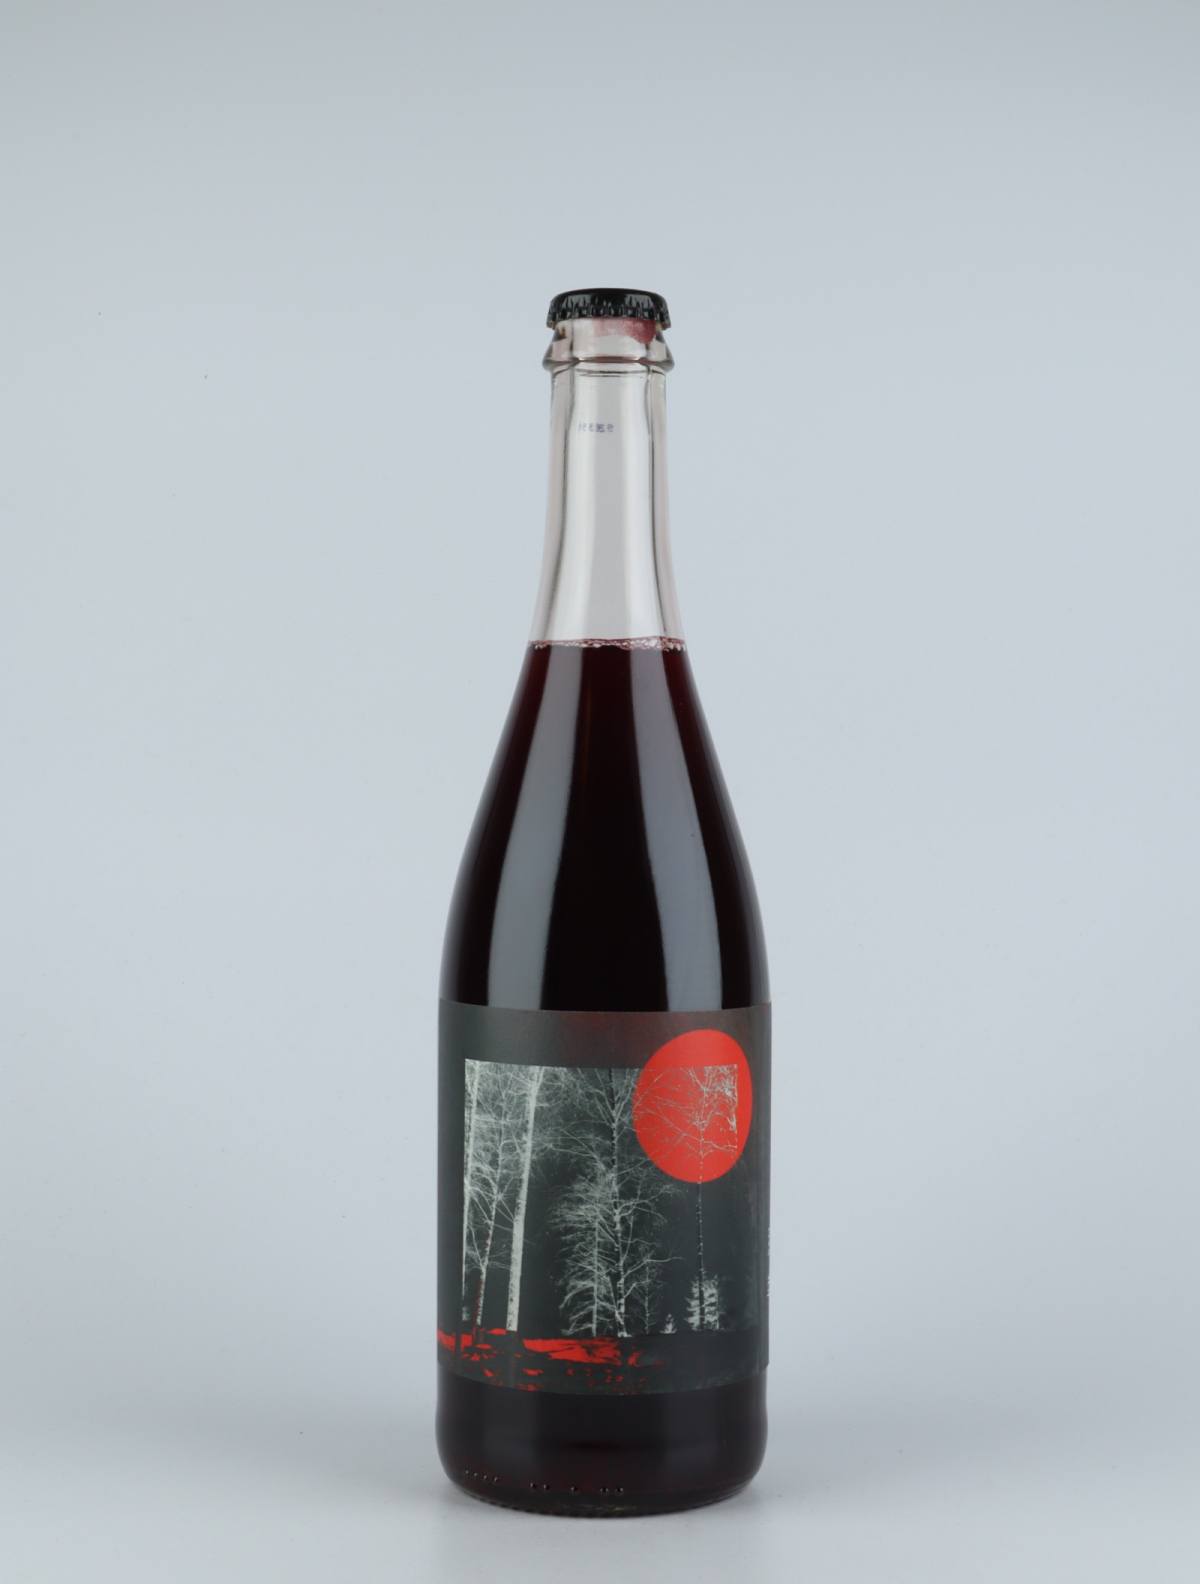 En flaske 2019 Joe-San Rødvin fra do.t.e Vini, Toscana i Italien